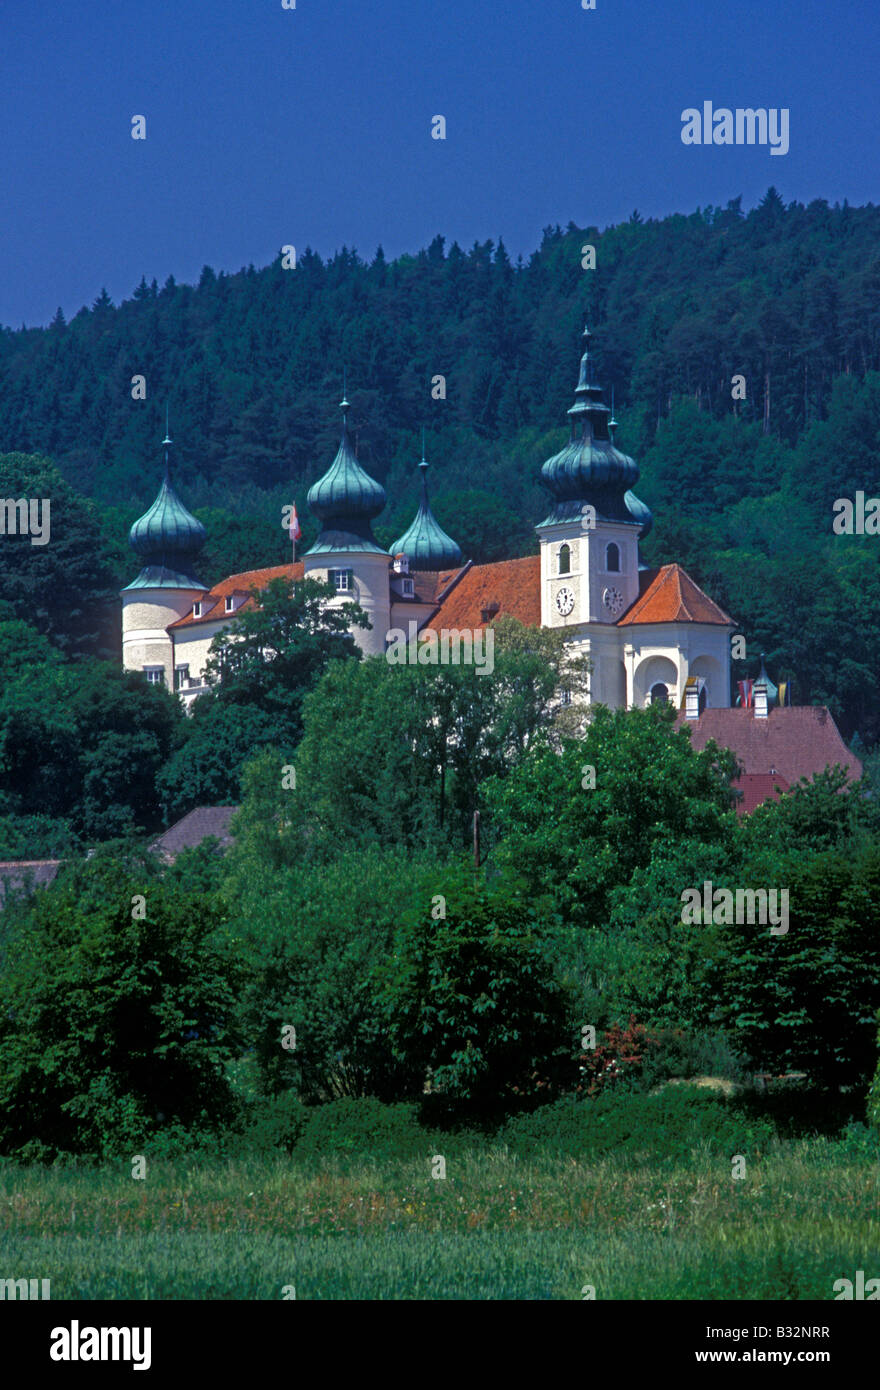 Schloss Artstetten, Artstetten Castle, town of Artstetten, Artstetten, Lower Austria, Lower Austria State, Austria, Europe Stock Photo